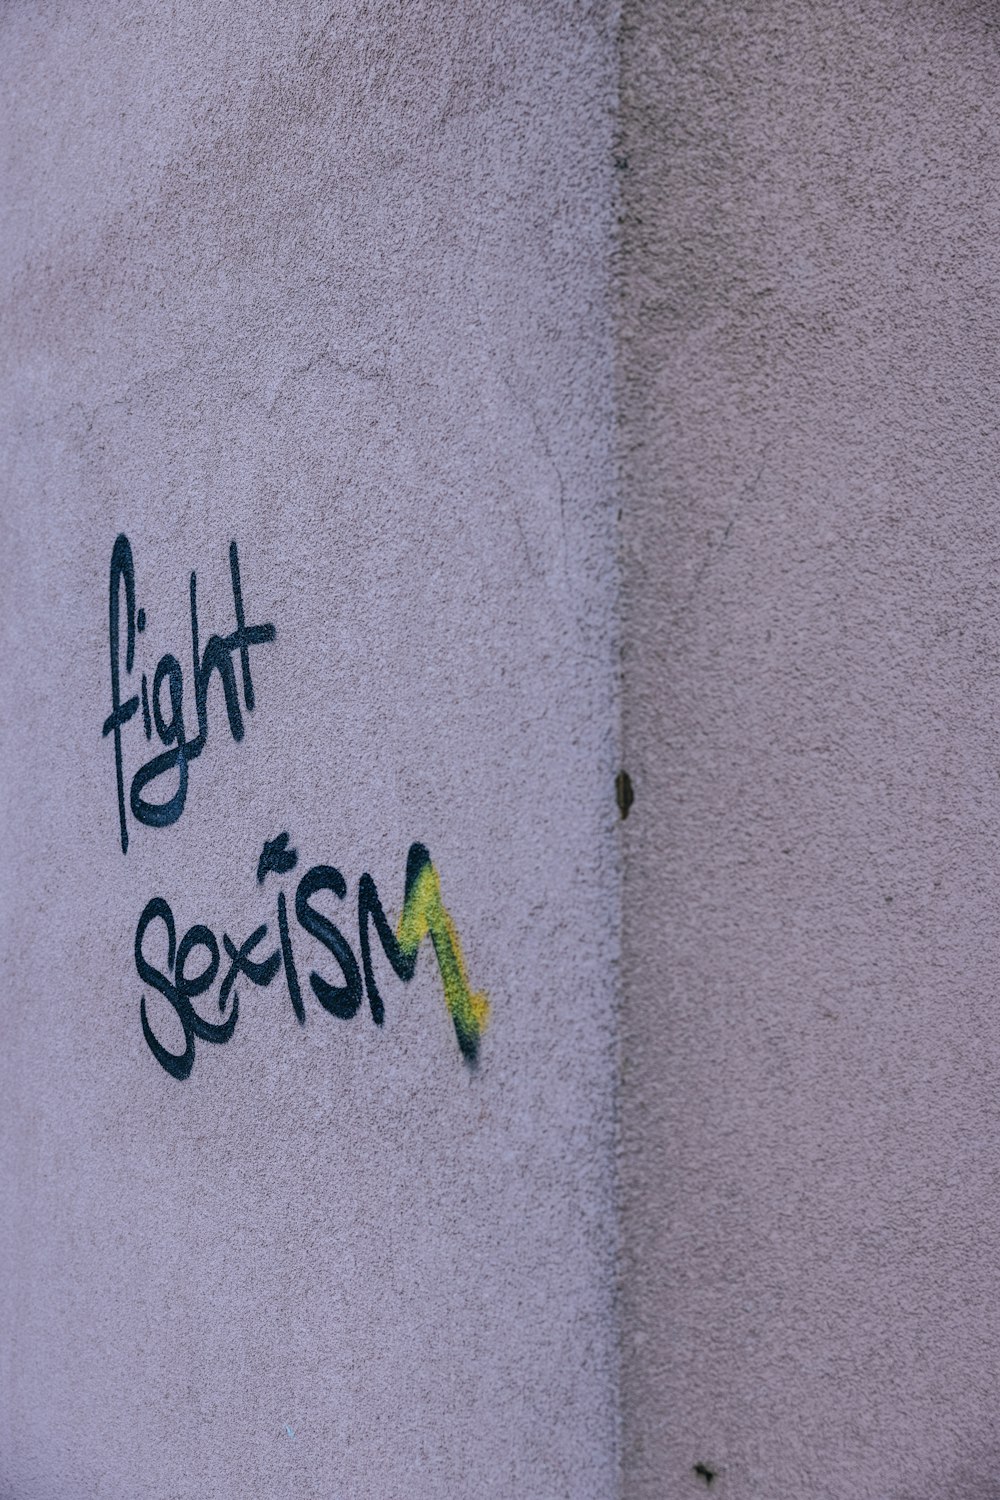 graffiti sur le côté d’un bâtiment qui dit combattre le sexisme